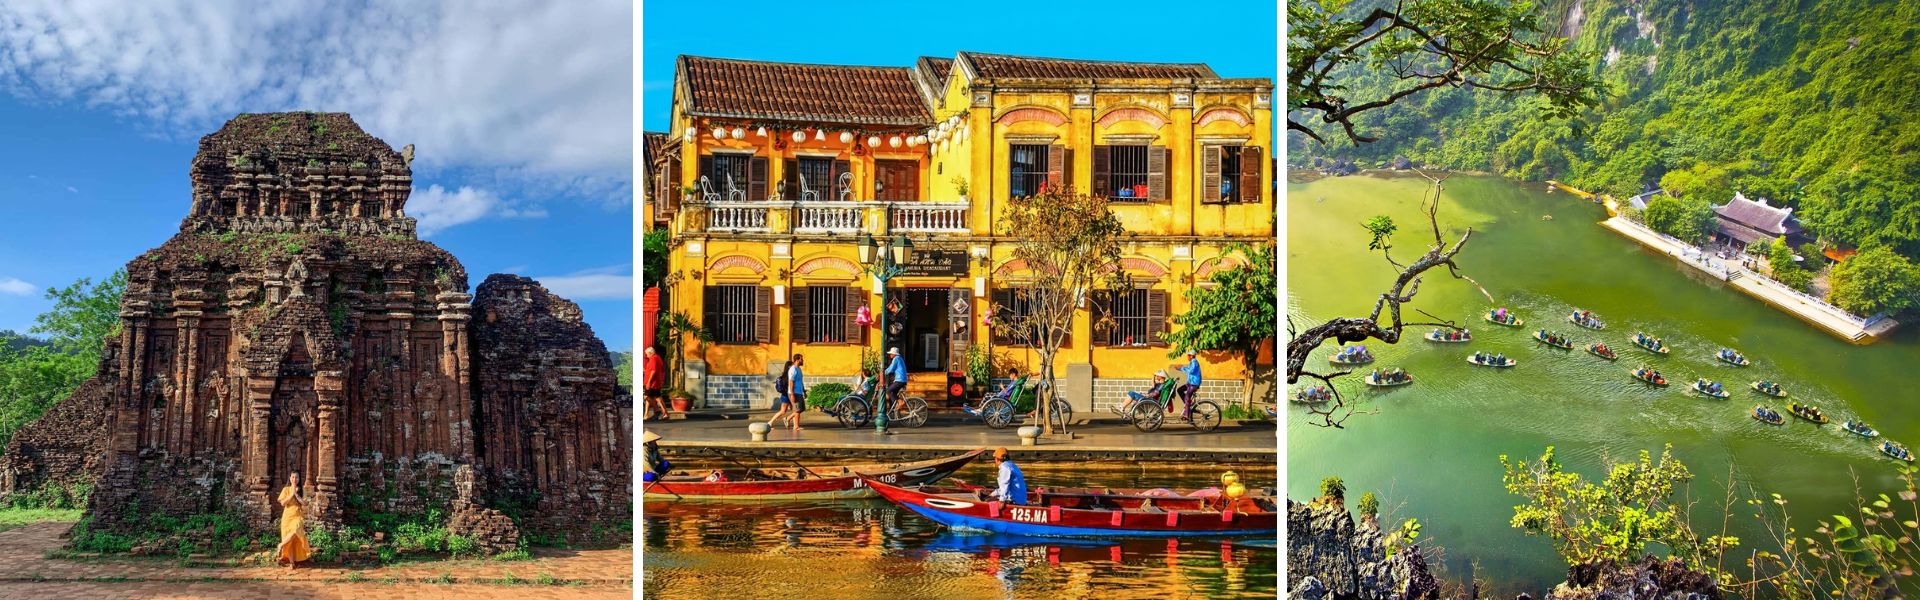 08 siti del patrimonio mondiale dell'UNESCO in Vietnam